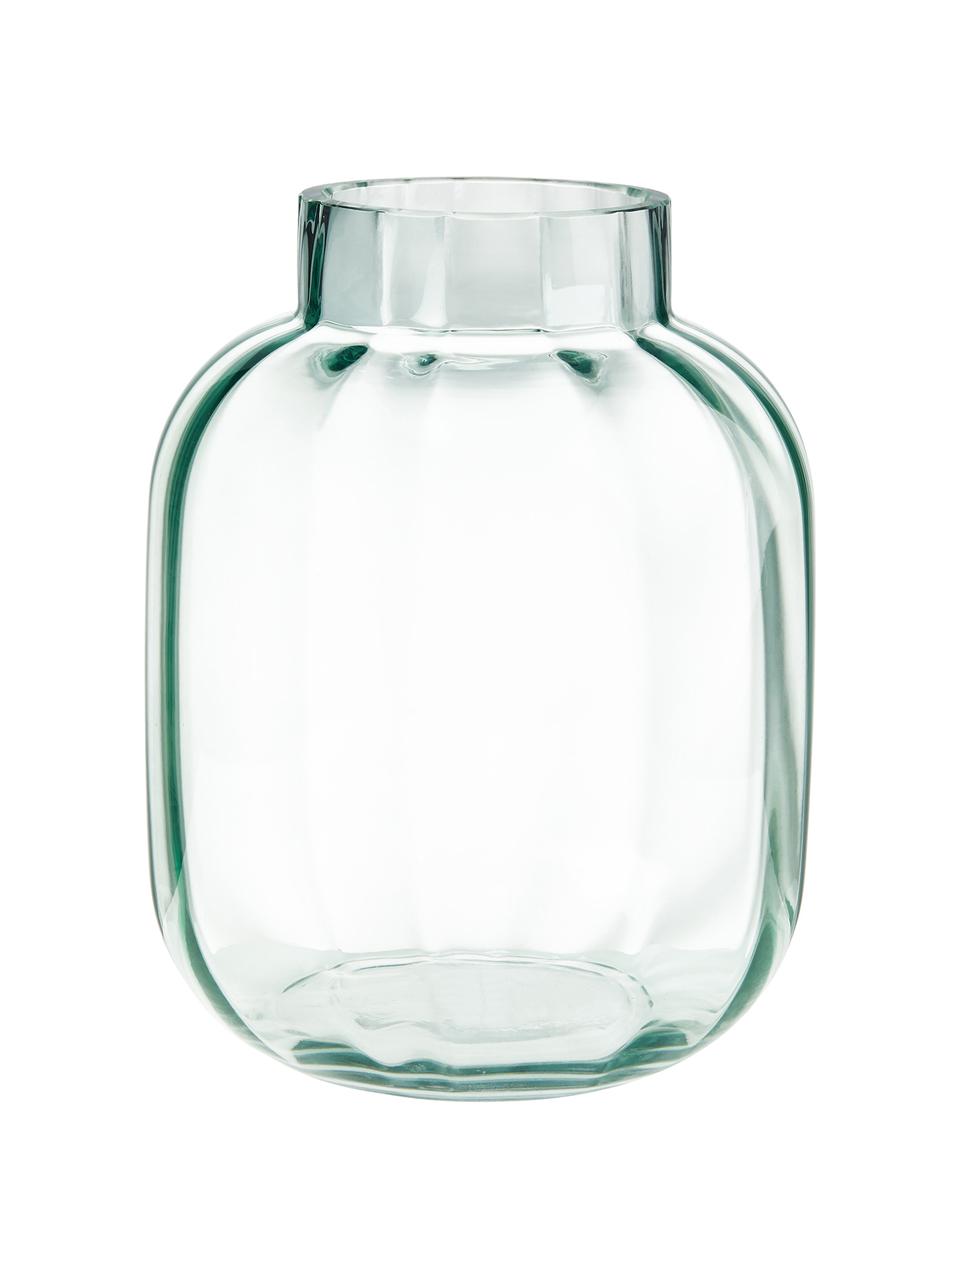 Glazen vaas Betty in lichtgroen, Glas, Lichtgroen, transparant, Ø 18 cm, H 22 cm